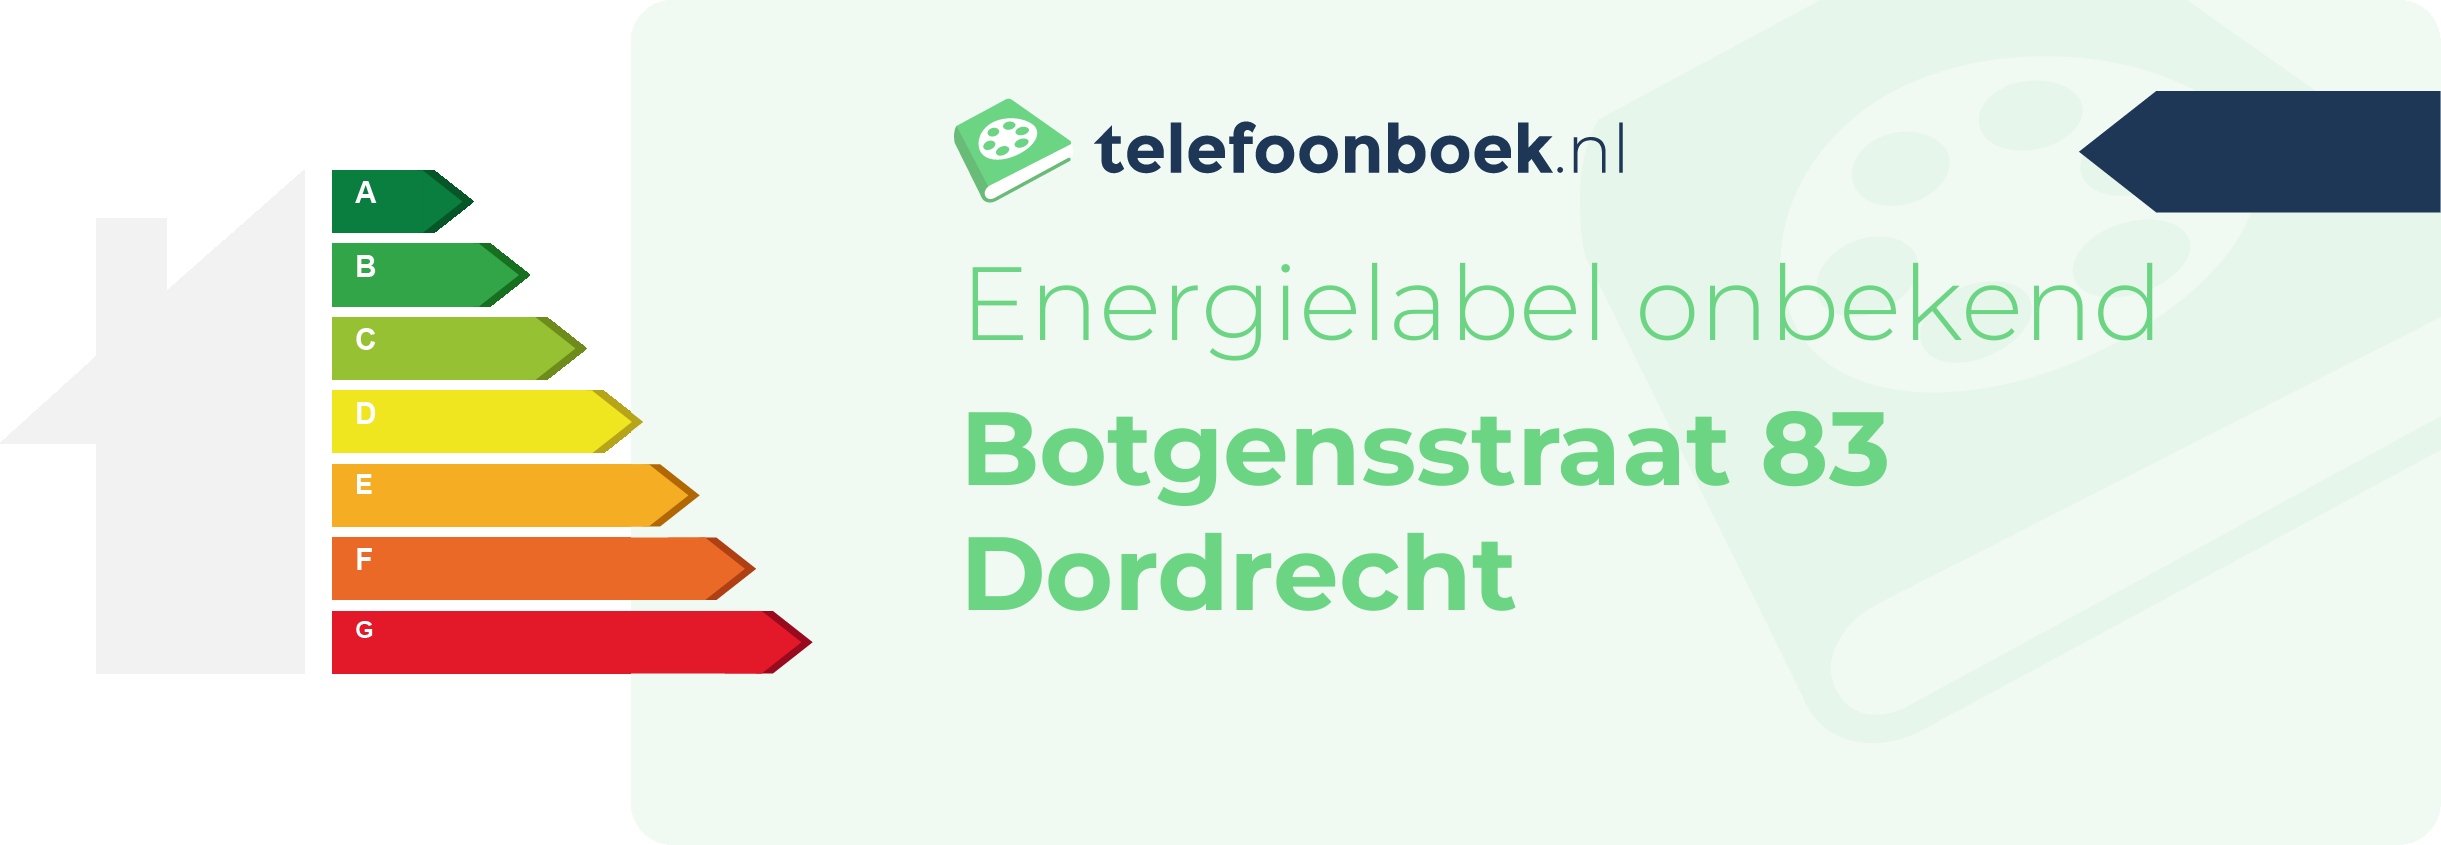 Energielabel Botgensstraat 83 Dordrecht